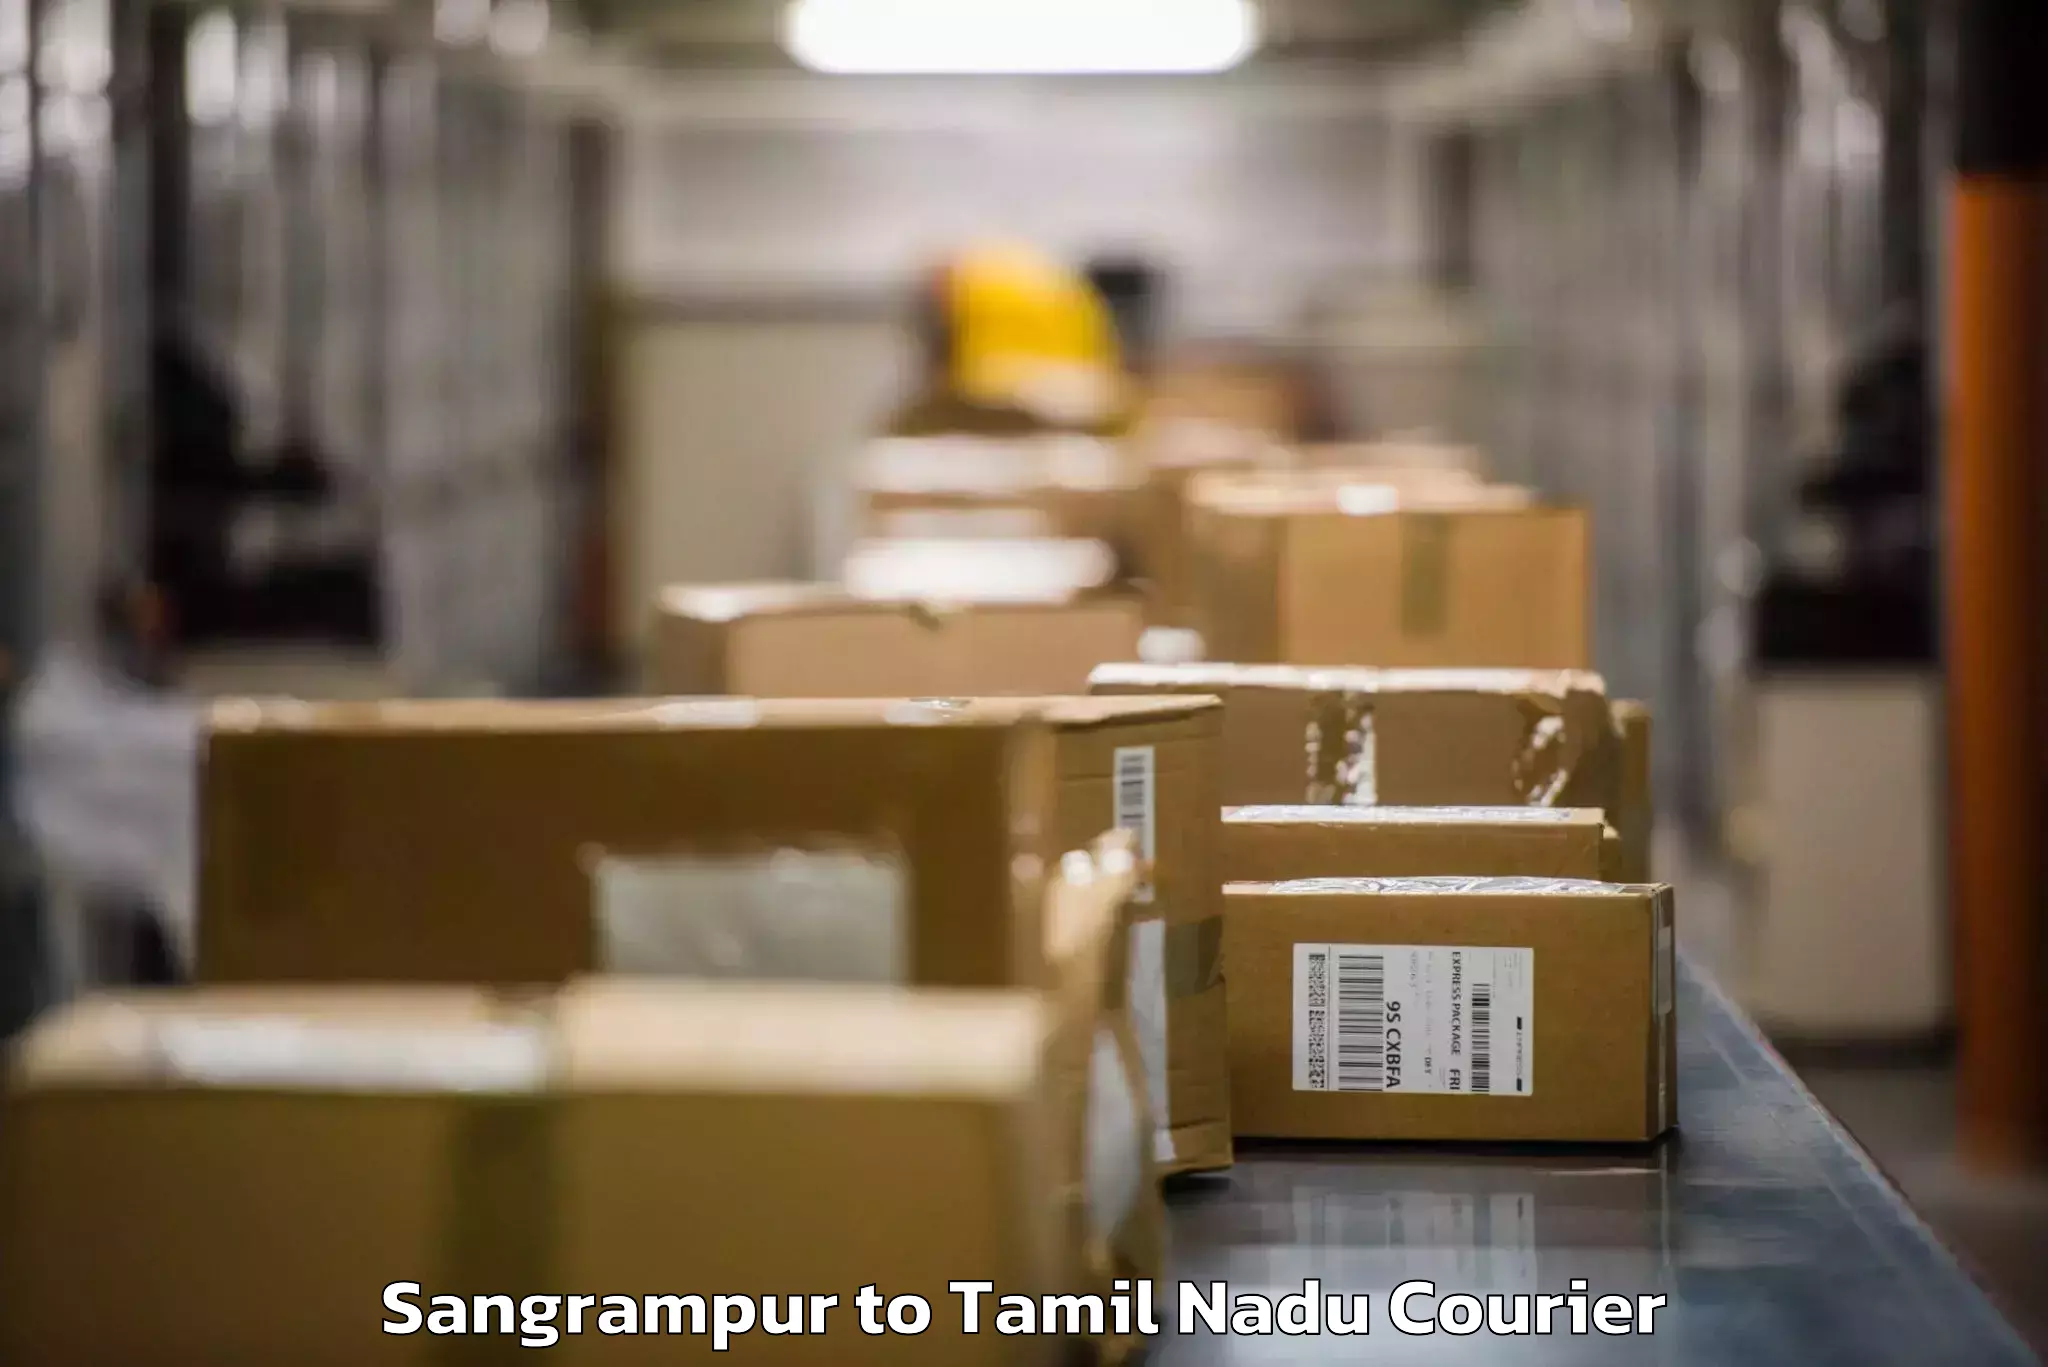 Baggage shipping experts Sangrampur to Ambattur